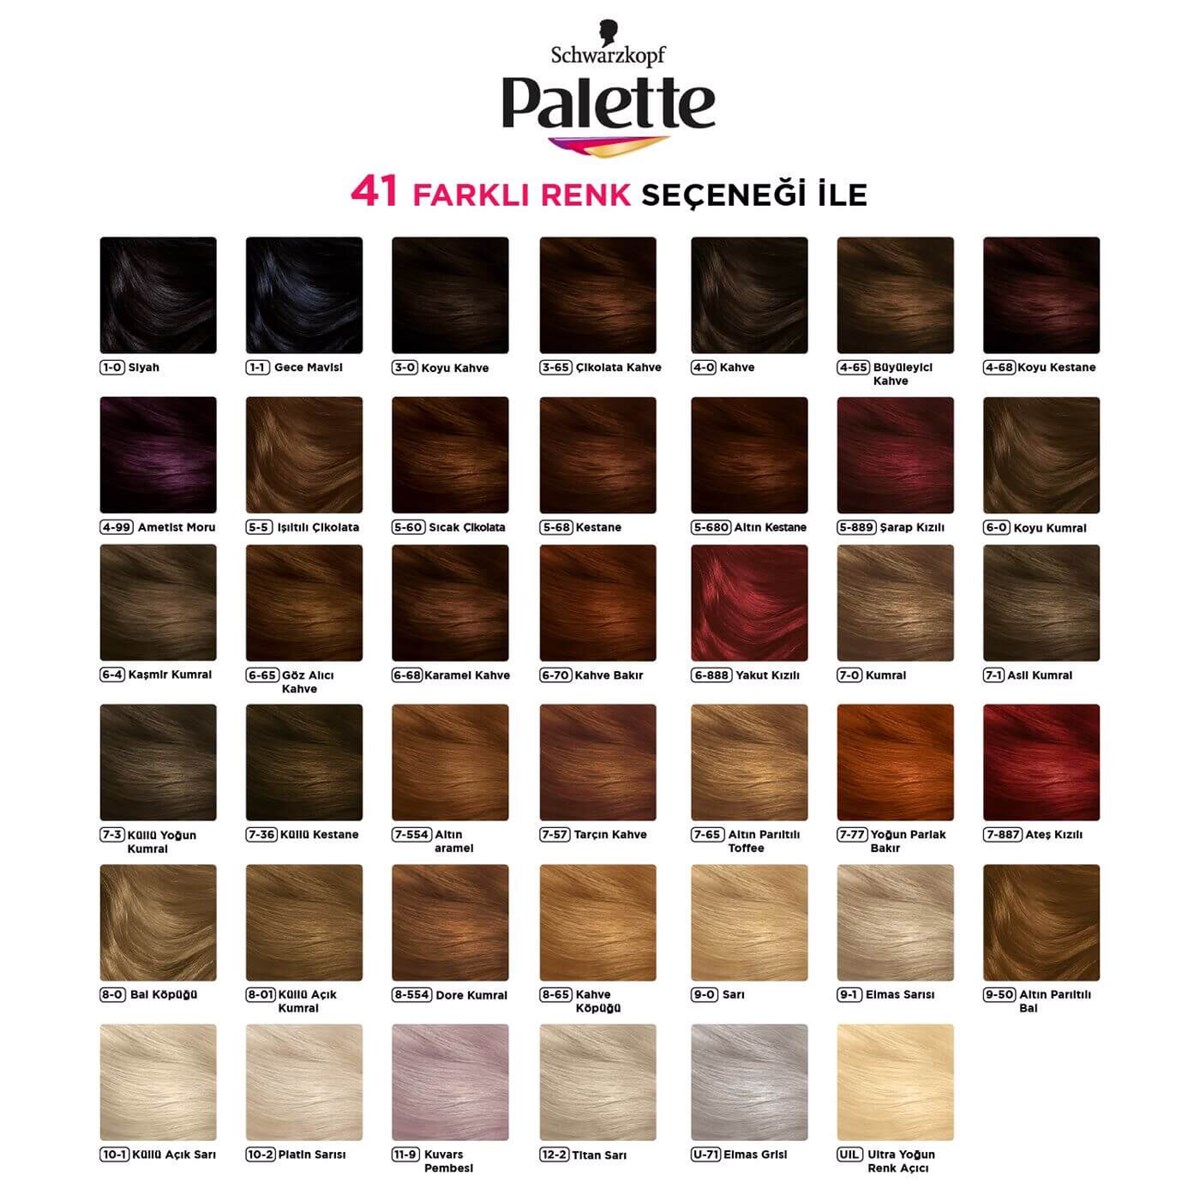 Palette Deluxe Saç Boyası Altın Karamel 50 ml | Farma Ucuz